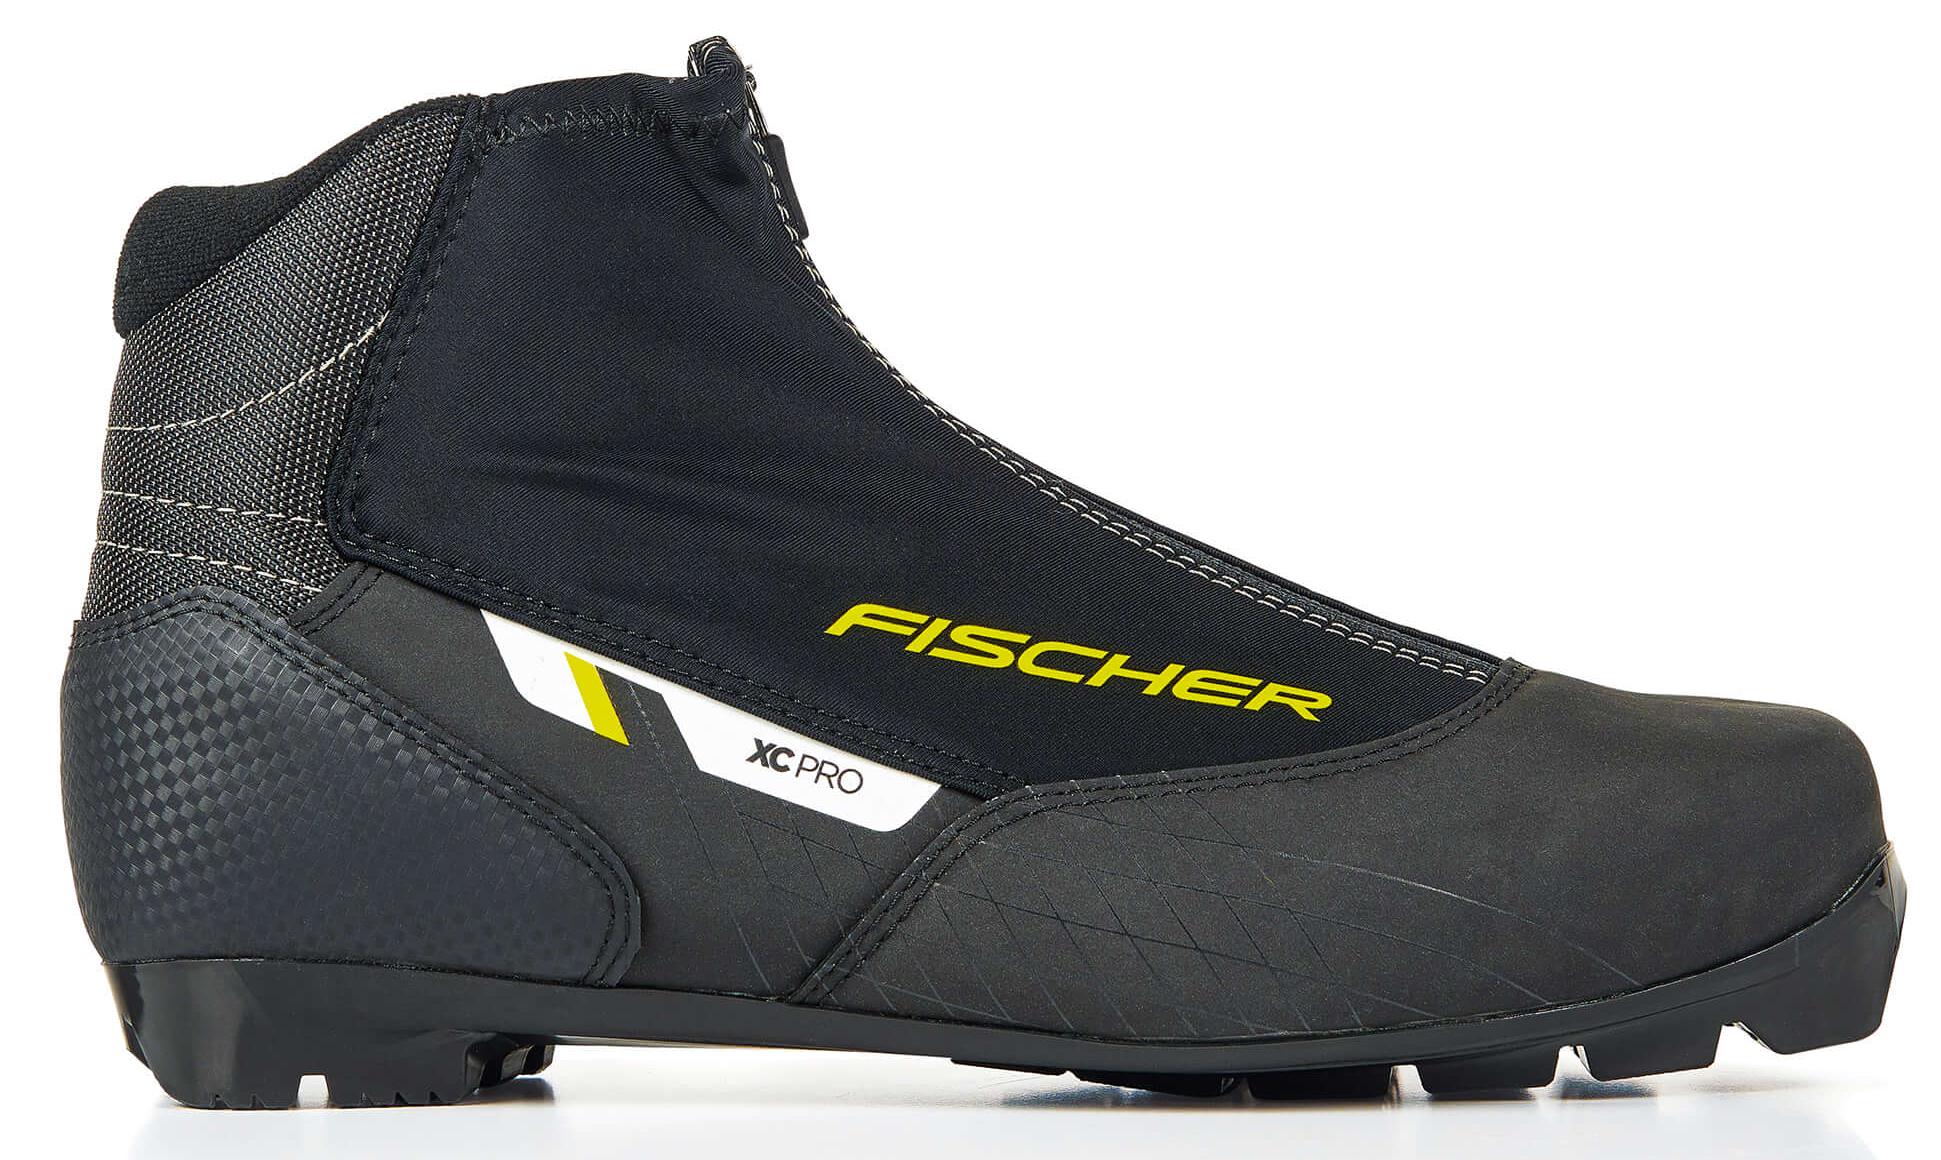 Ботинки для беговых лыж Fischer Xc Pro 2021, black/yellow, 44